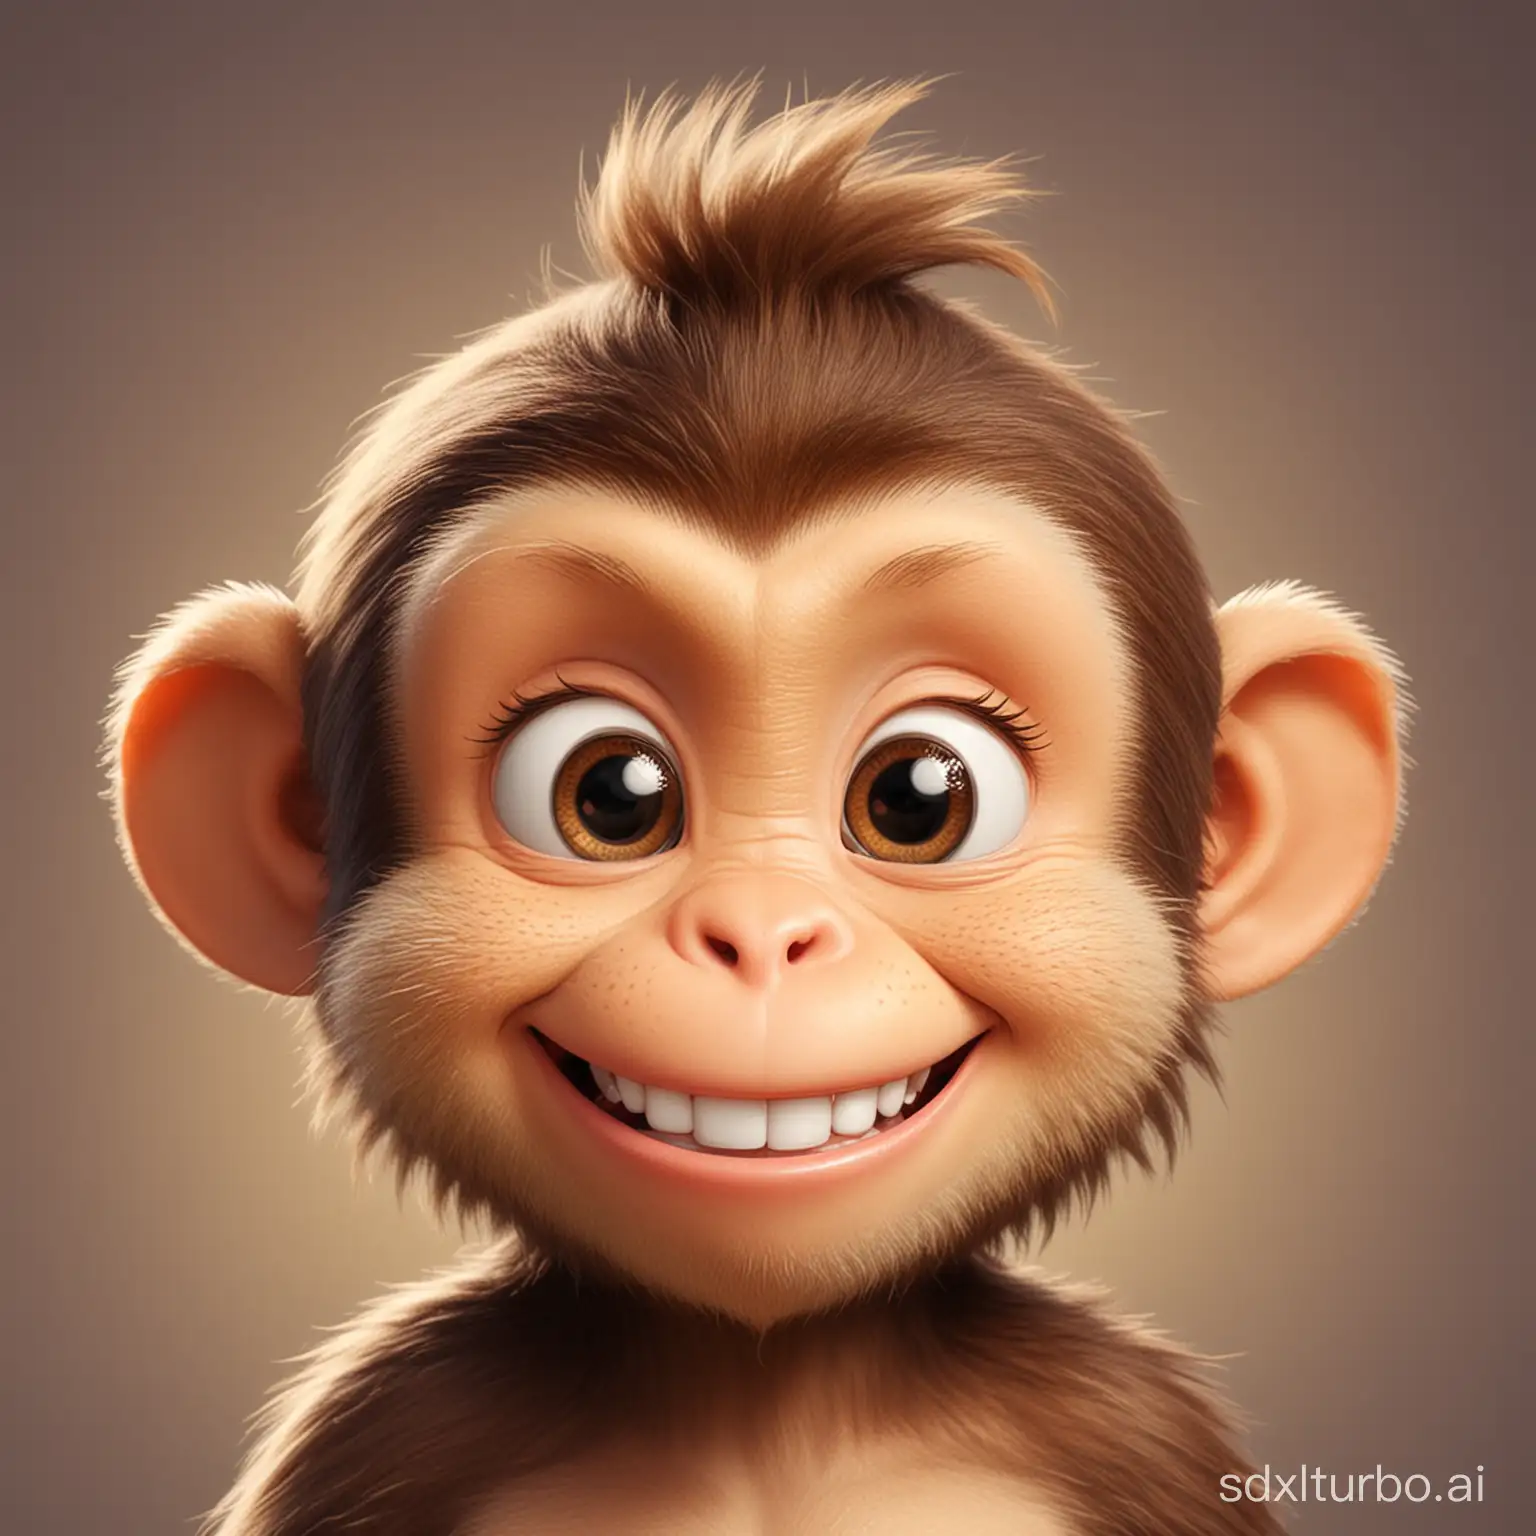 Smiling-Monkey-Avatar-Playful-Primate-Illustration